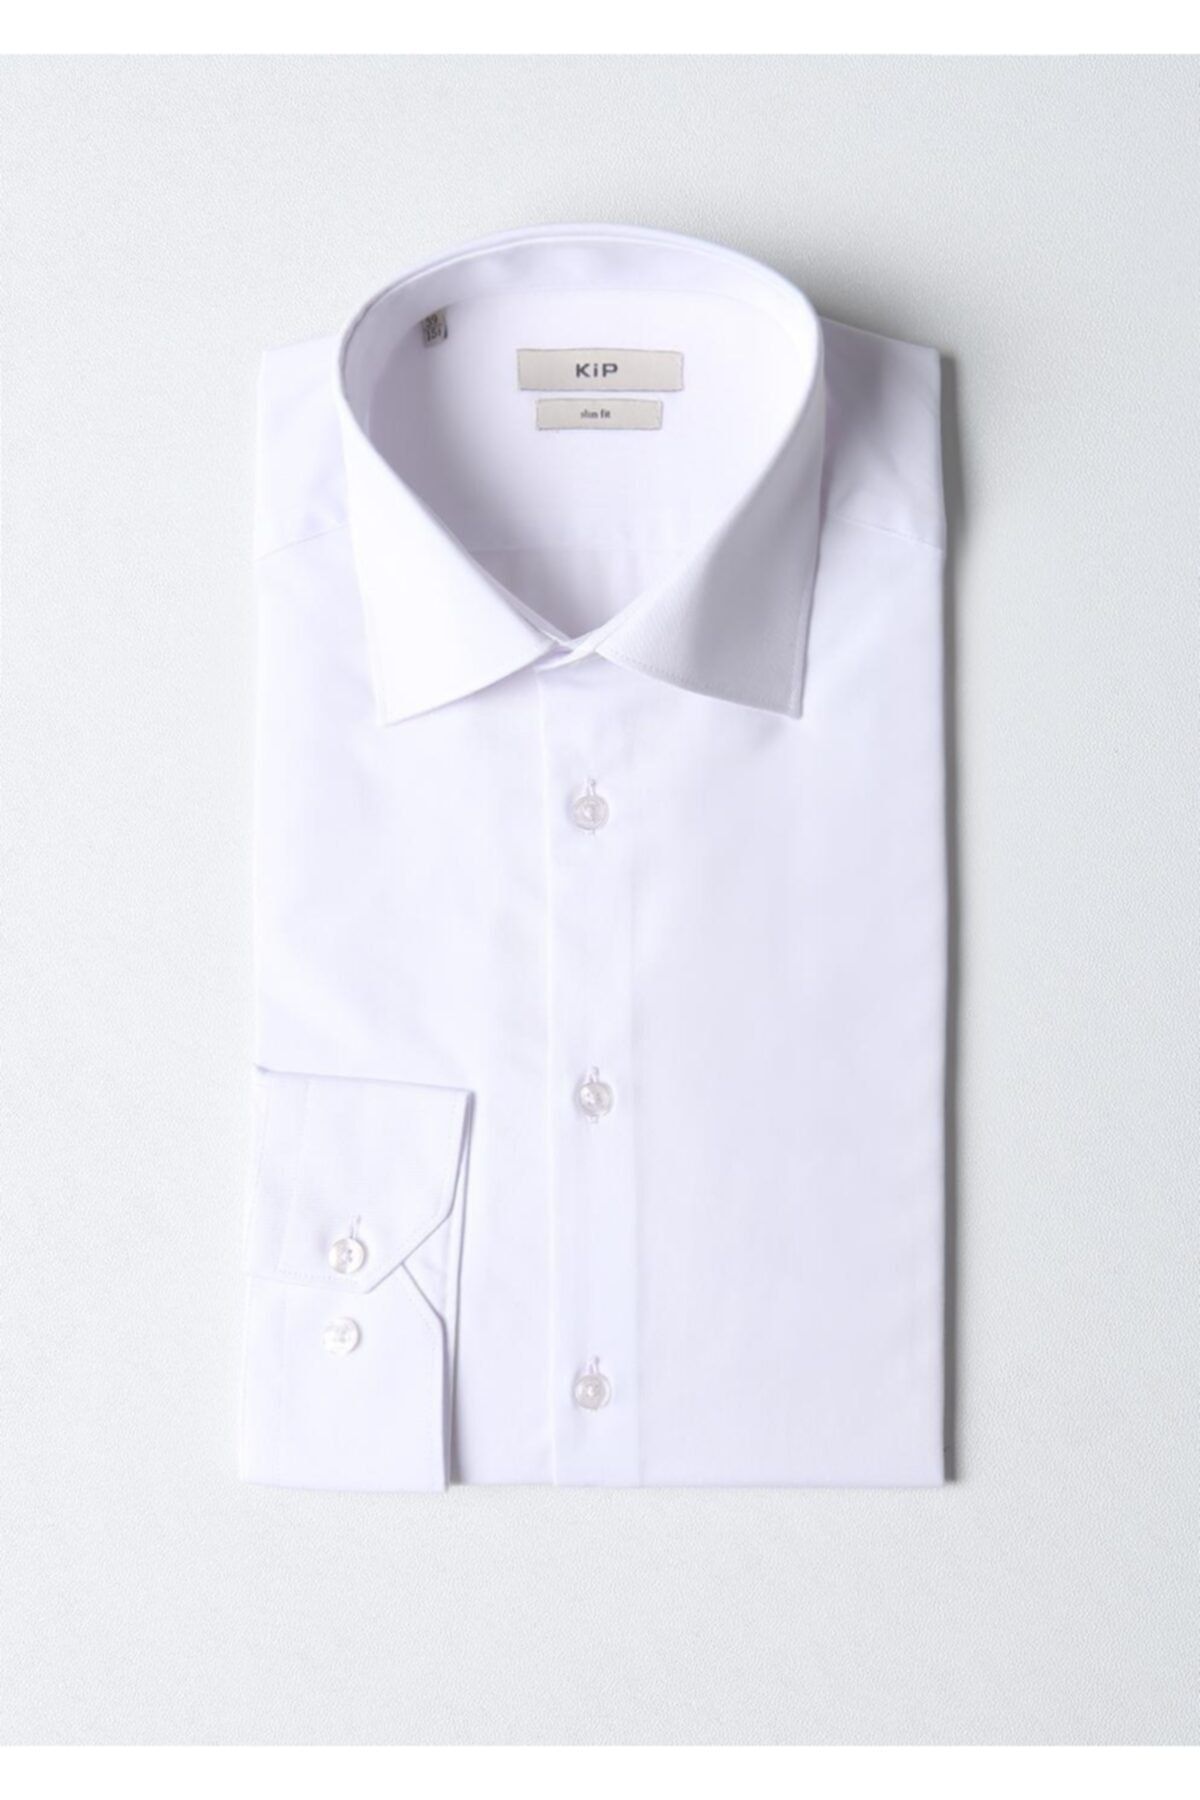 Kip Beyaz Düz Slim Fit Dokuma Klasik Pamuk Karışımlı Gömlek